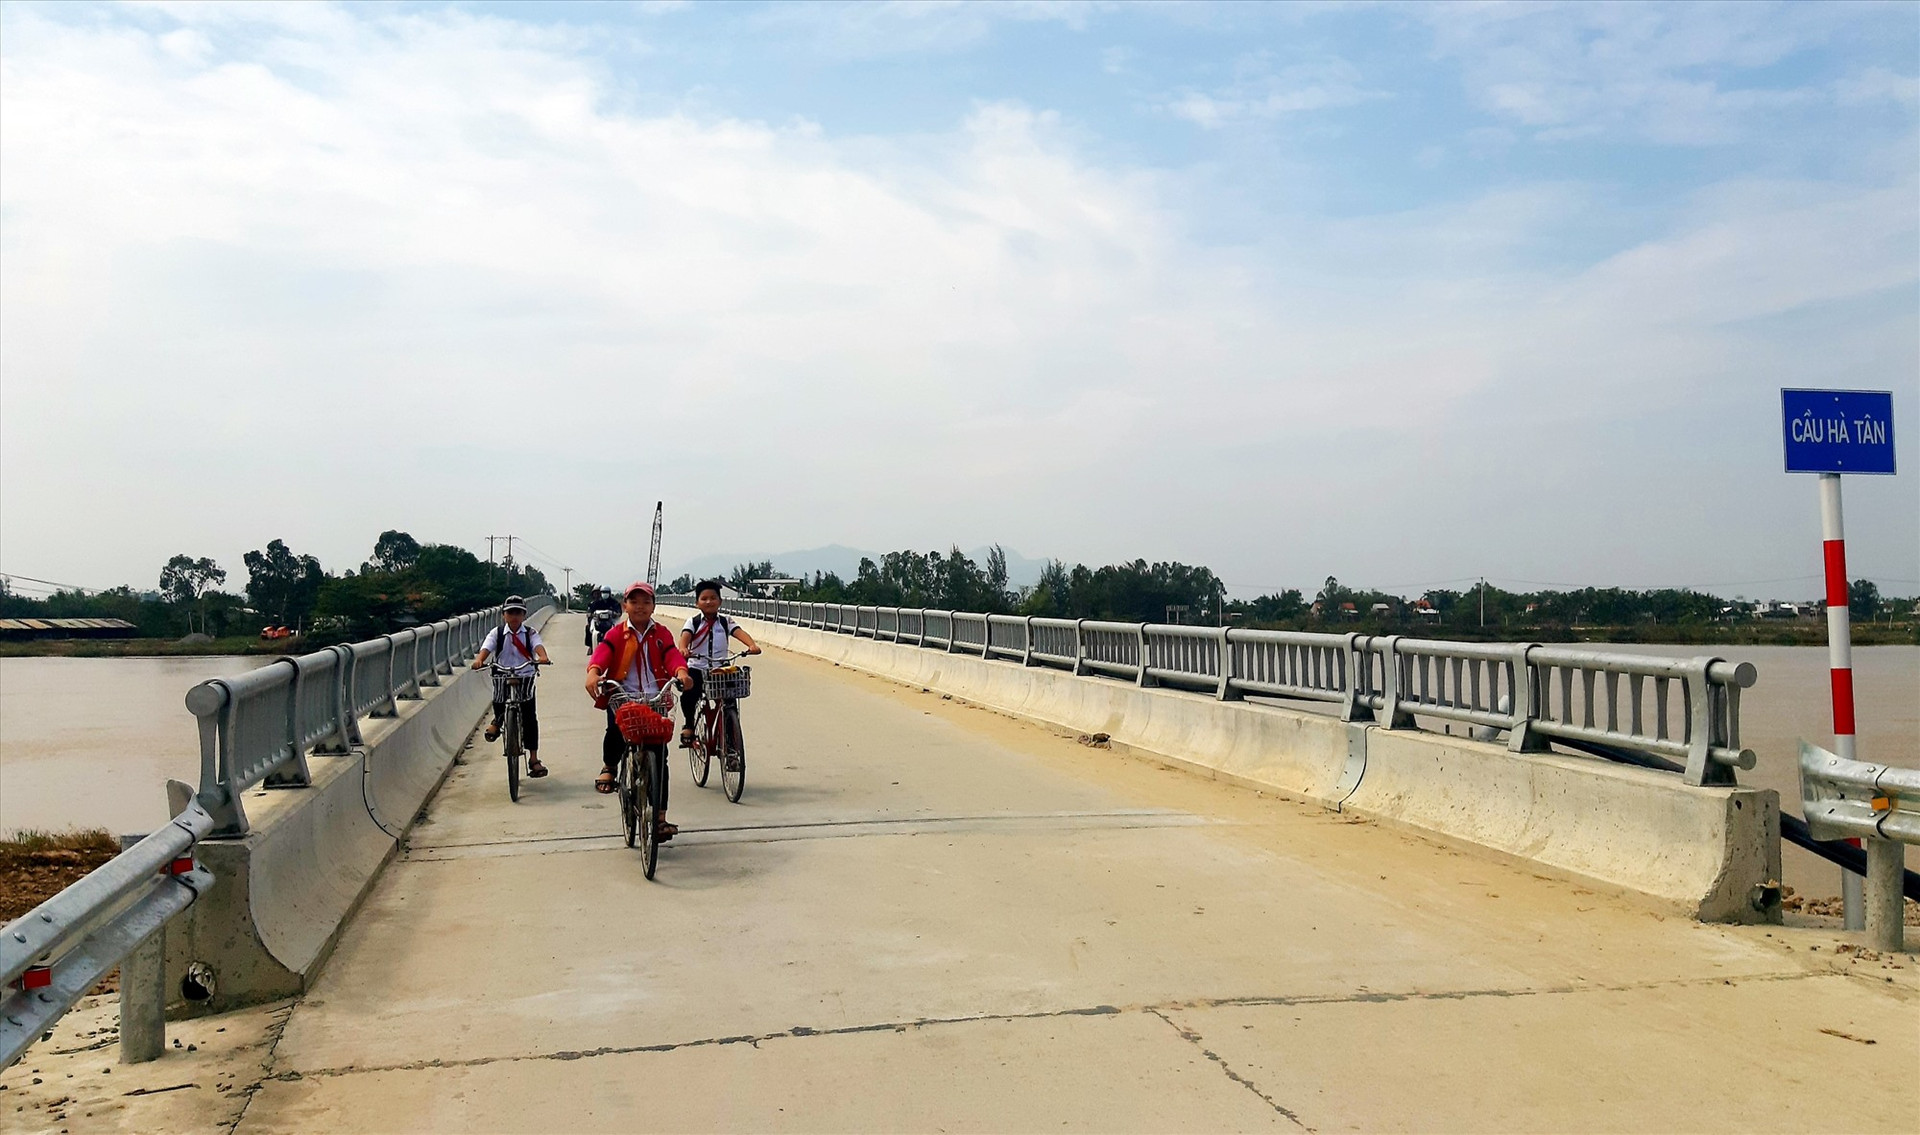 Cầu Hà Tân vừa được đầu tư xây dựng hoàn thành sẽ tạo động lực thúc đẩy kinh tế - xã hội của Duy Vinh phát triển. Ảnh: T.S